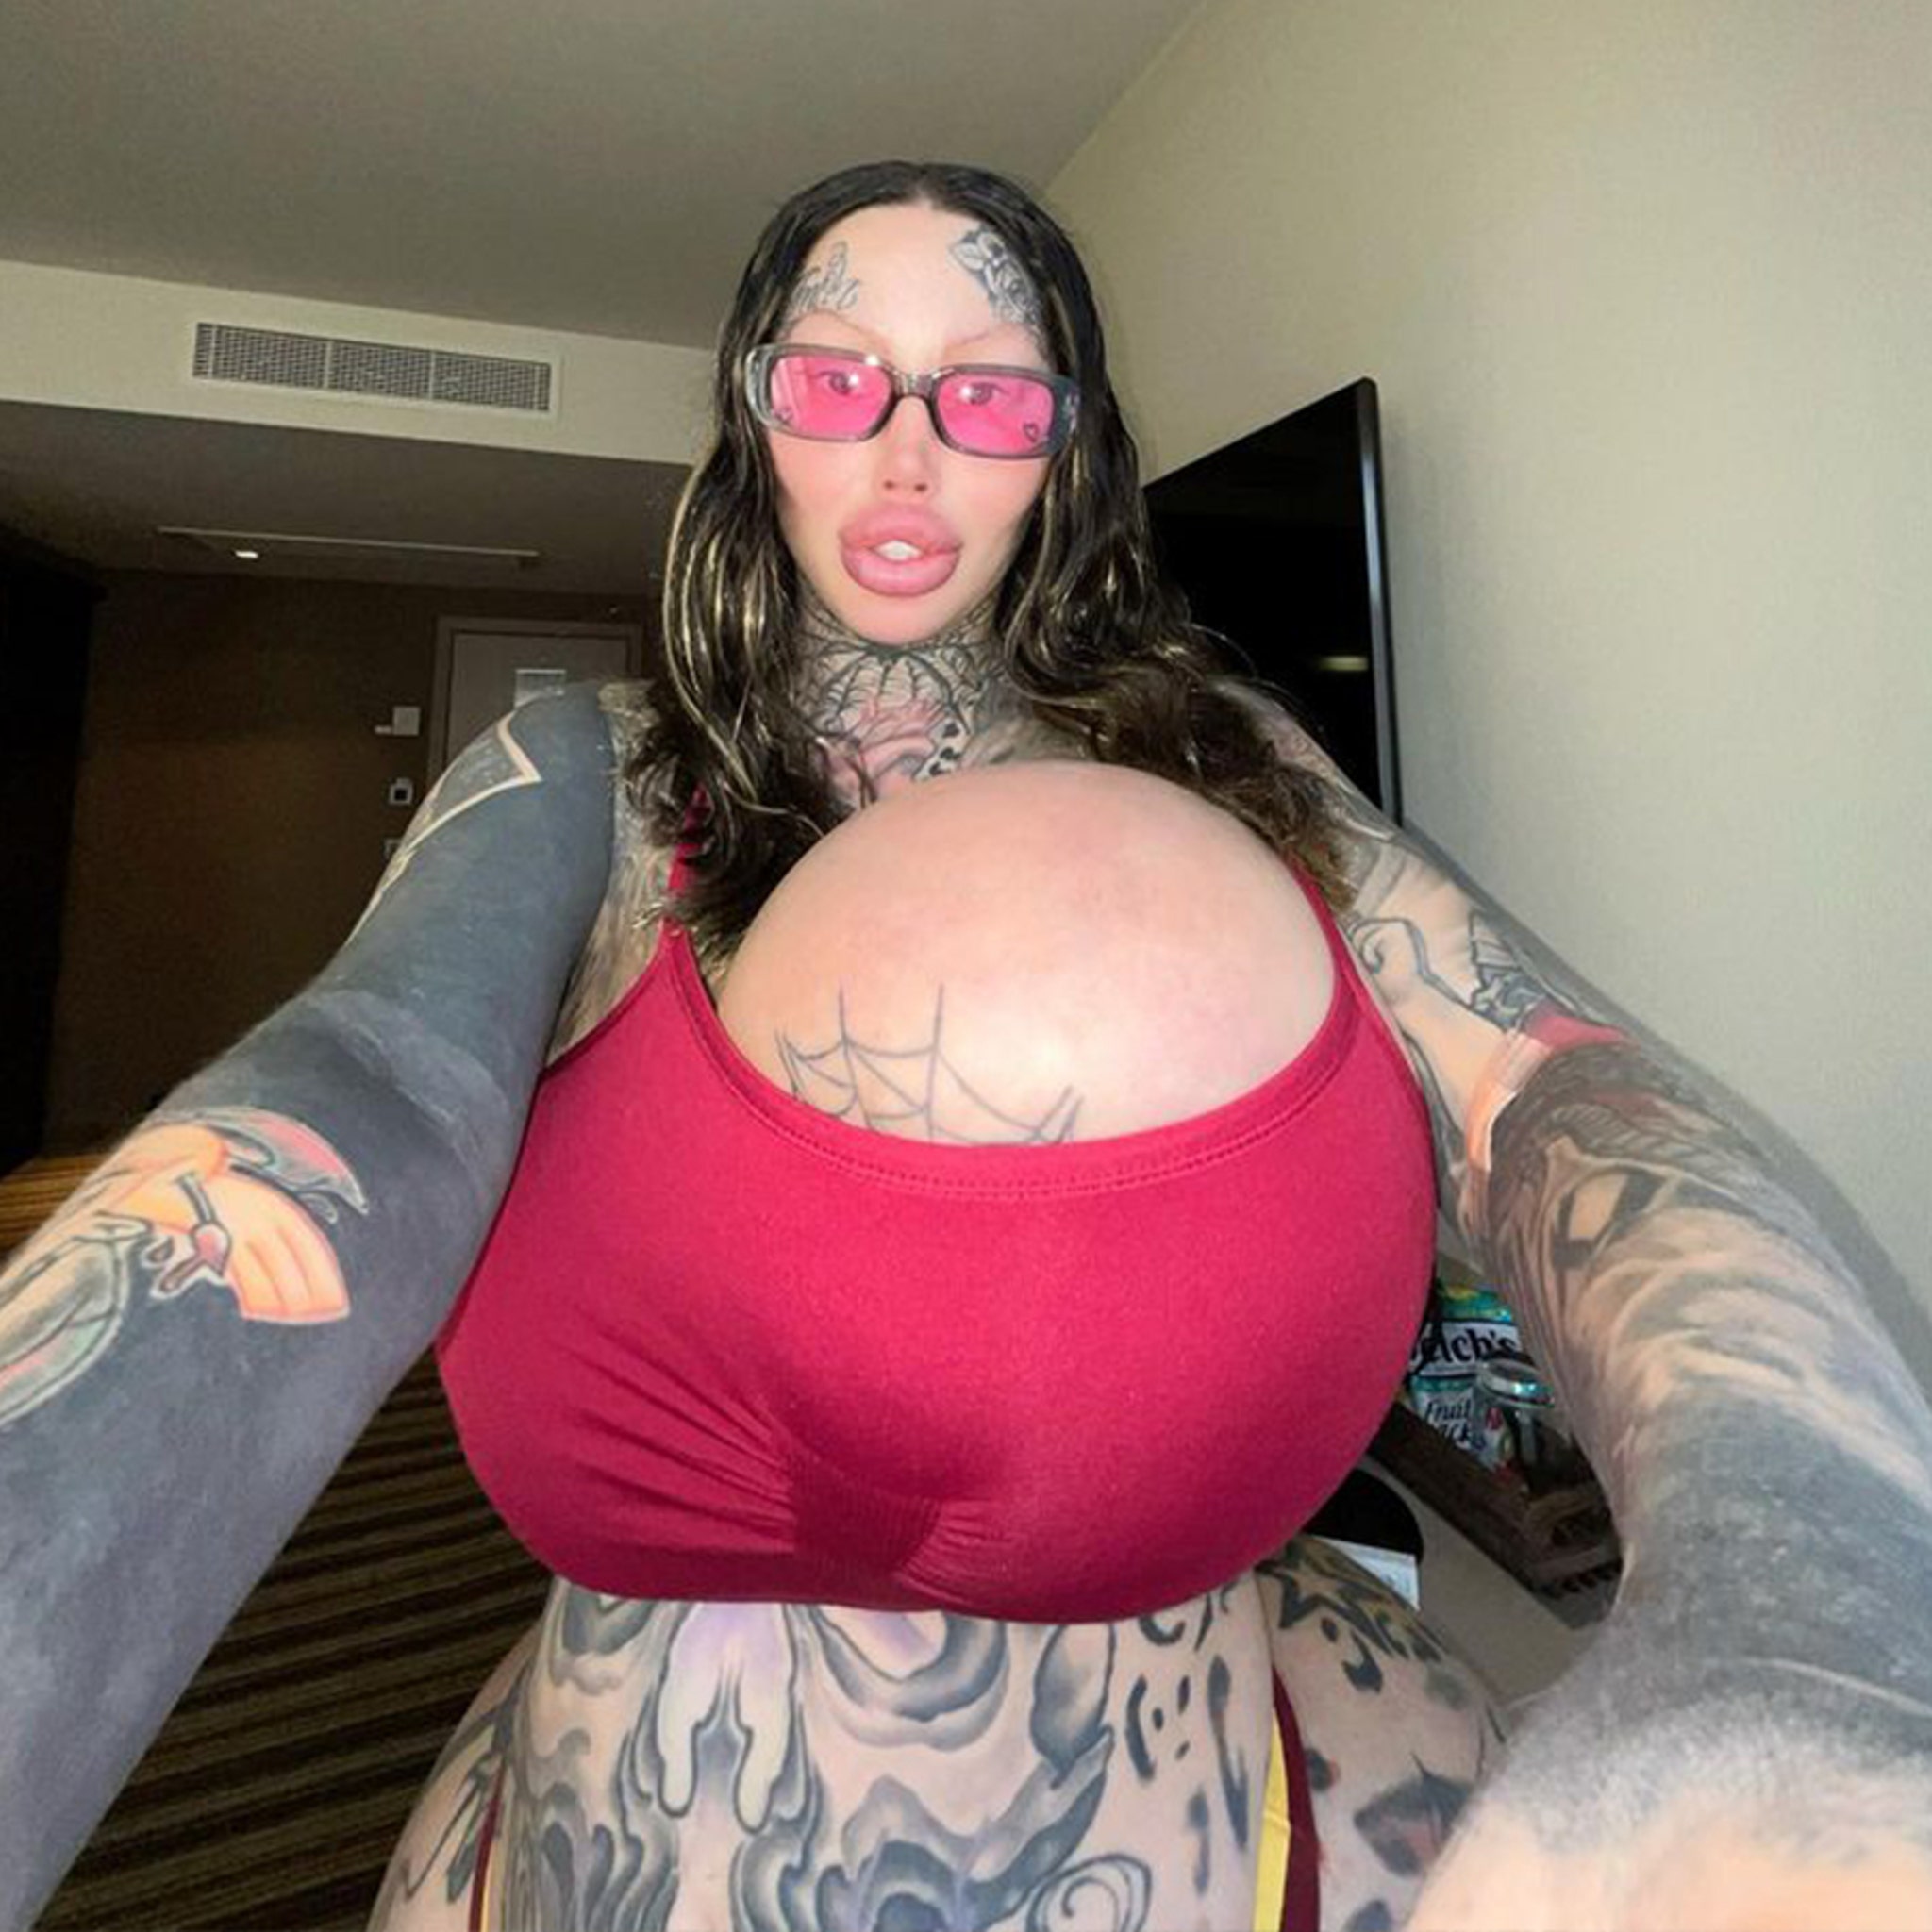 Instagram Models Massive 38J Breast Implant Bursts